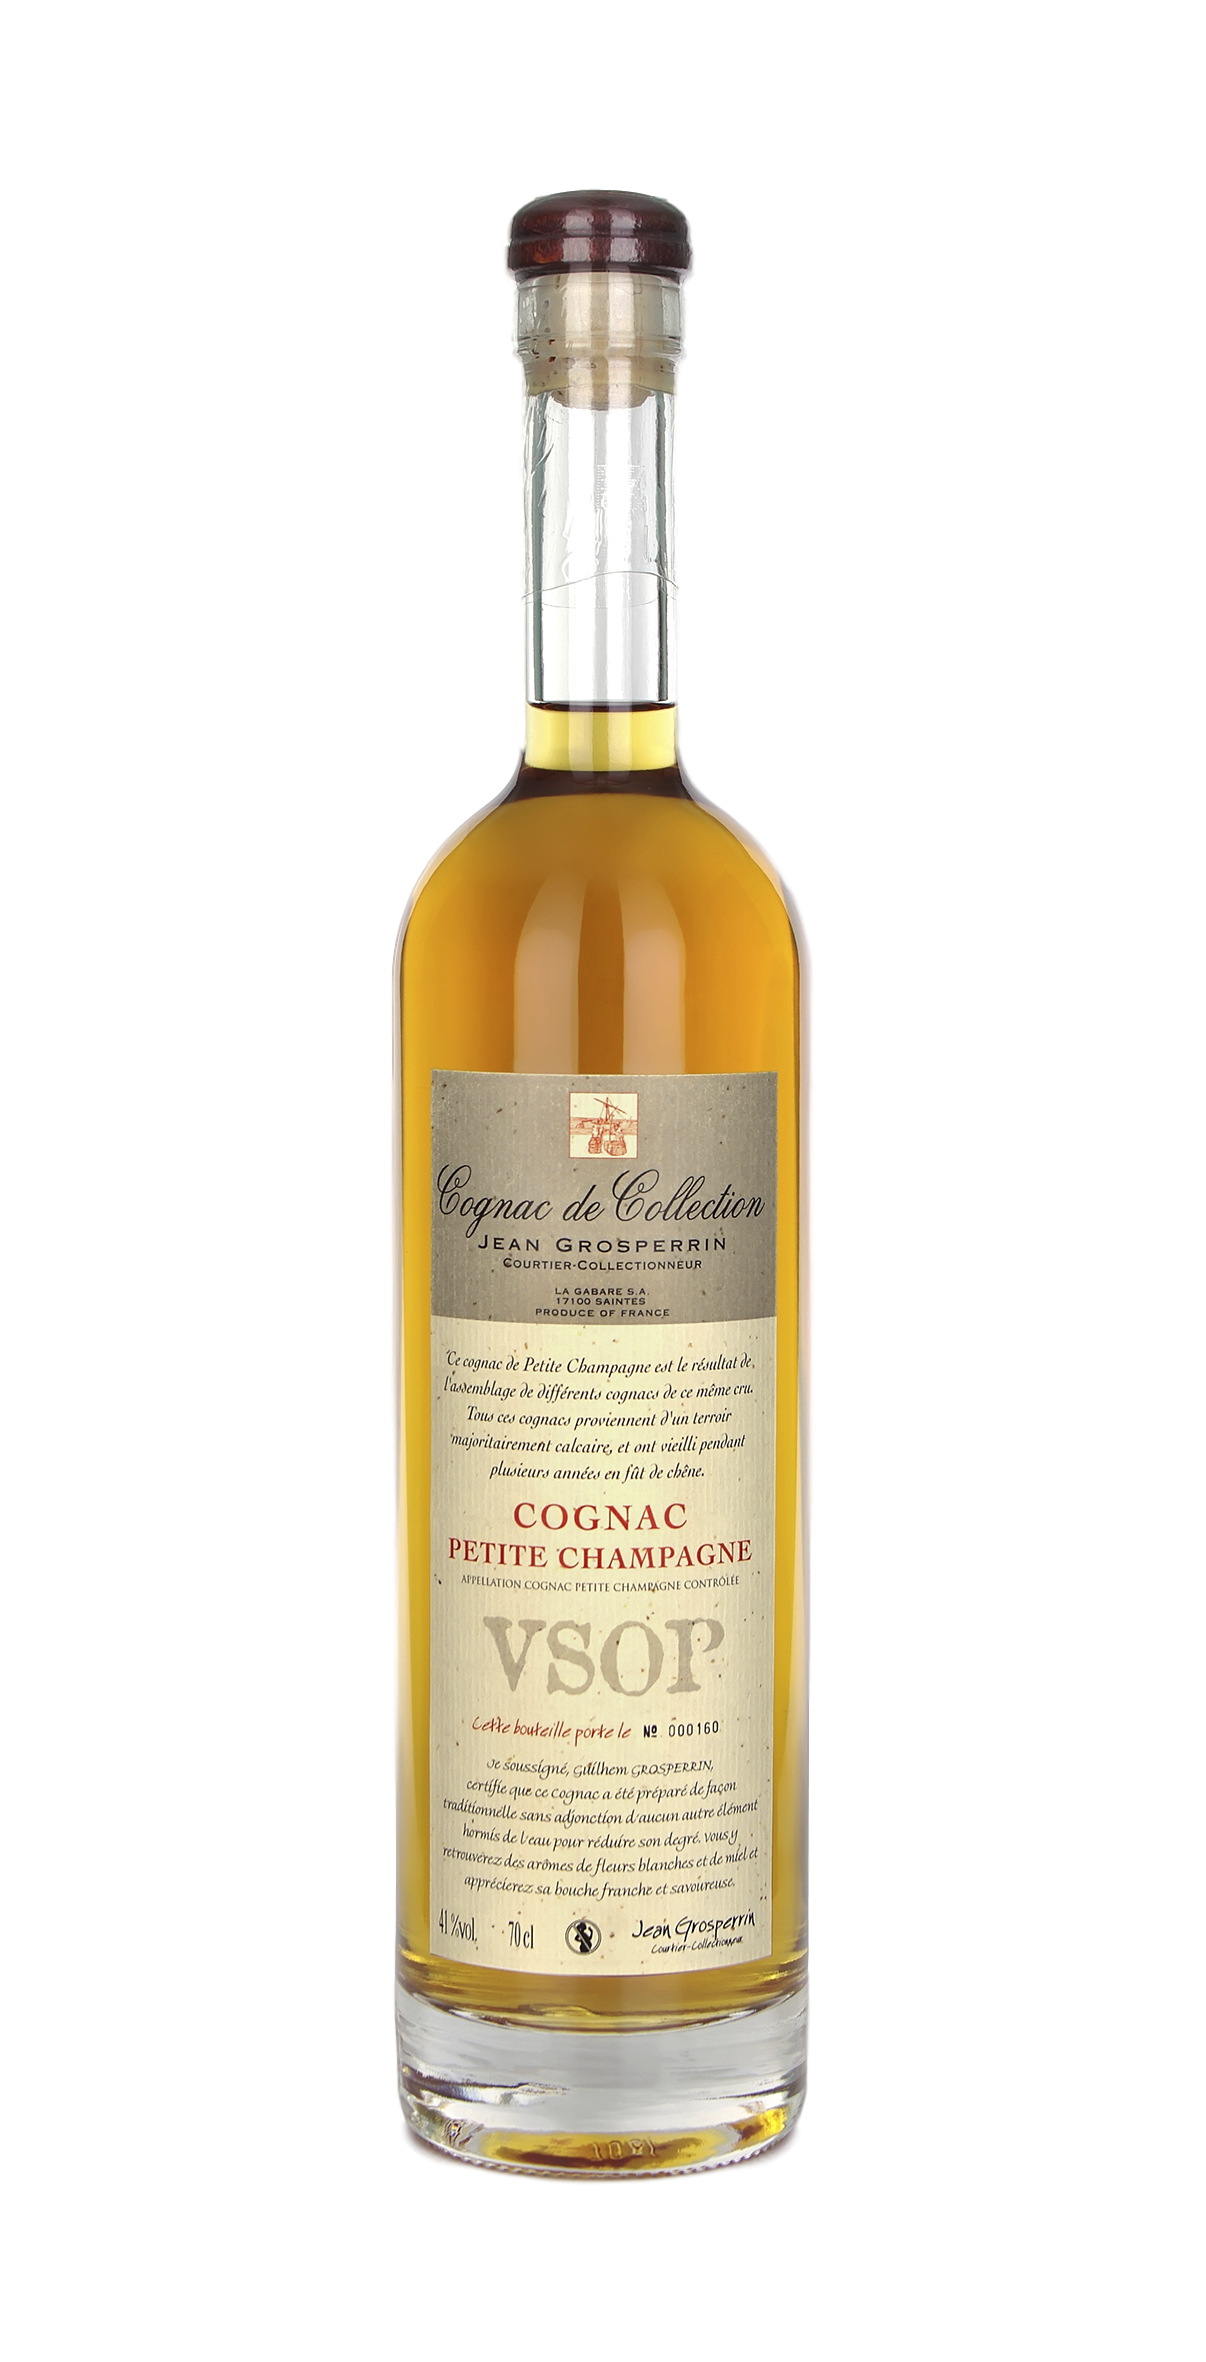 Cognac de Collection Jean Grosperrin VSOP